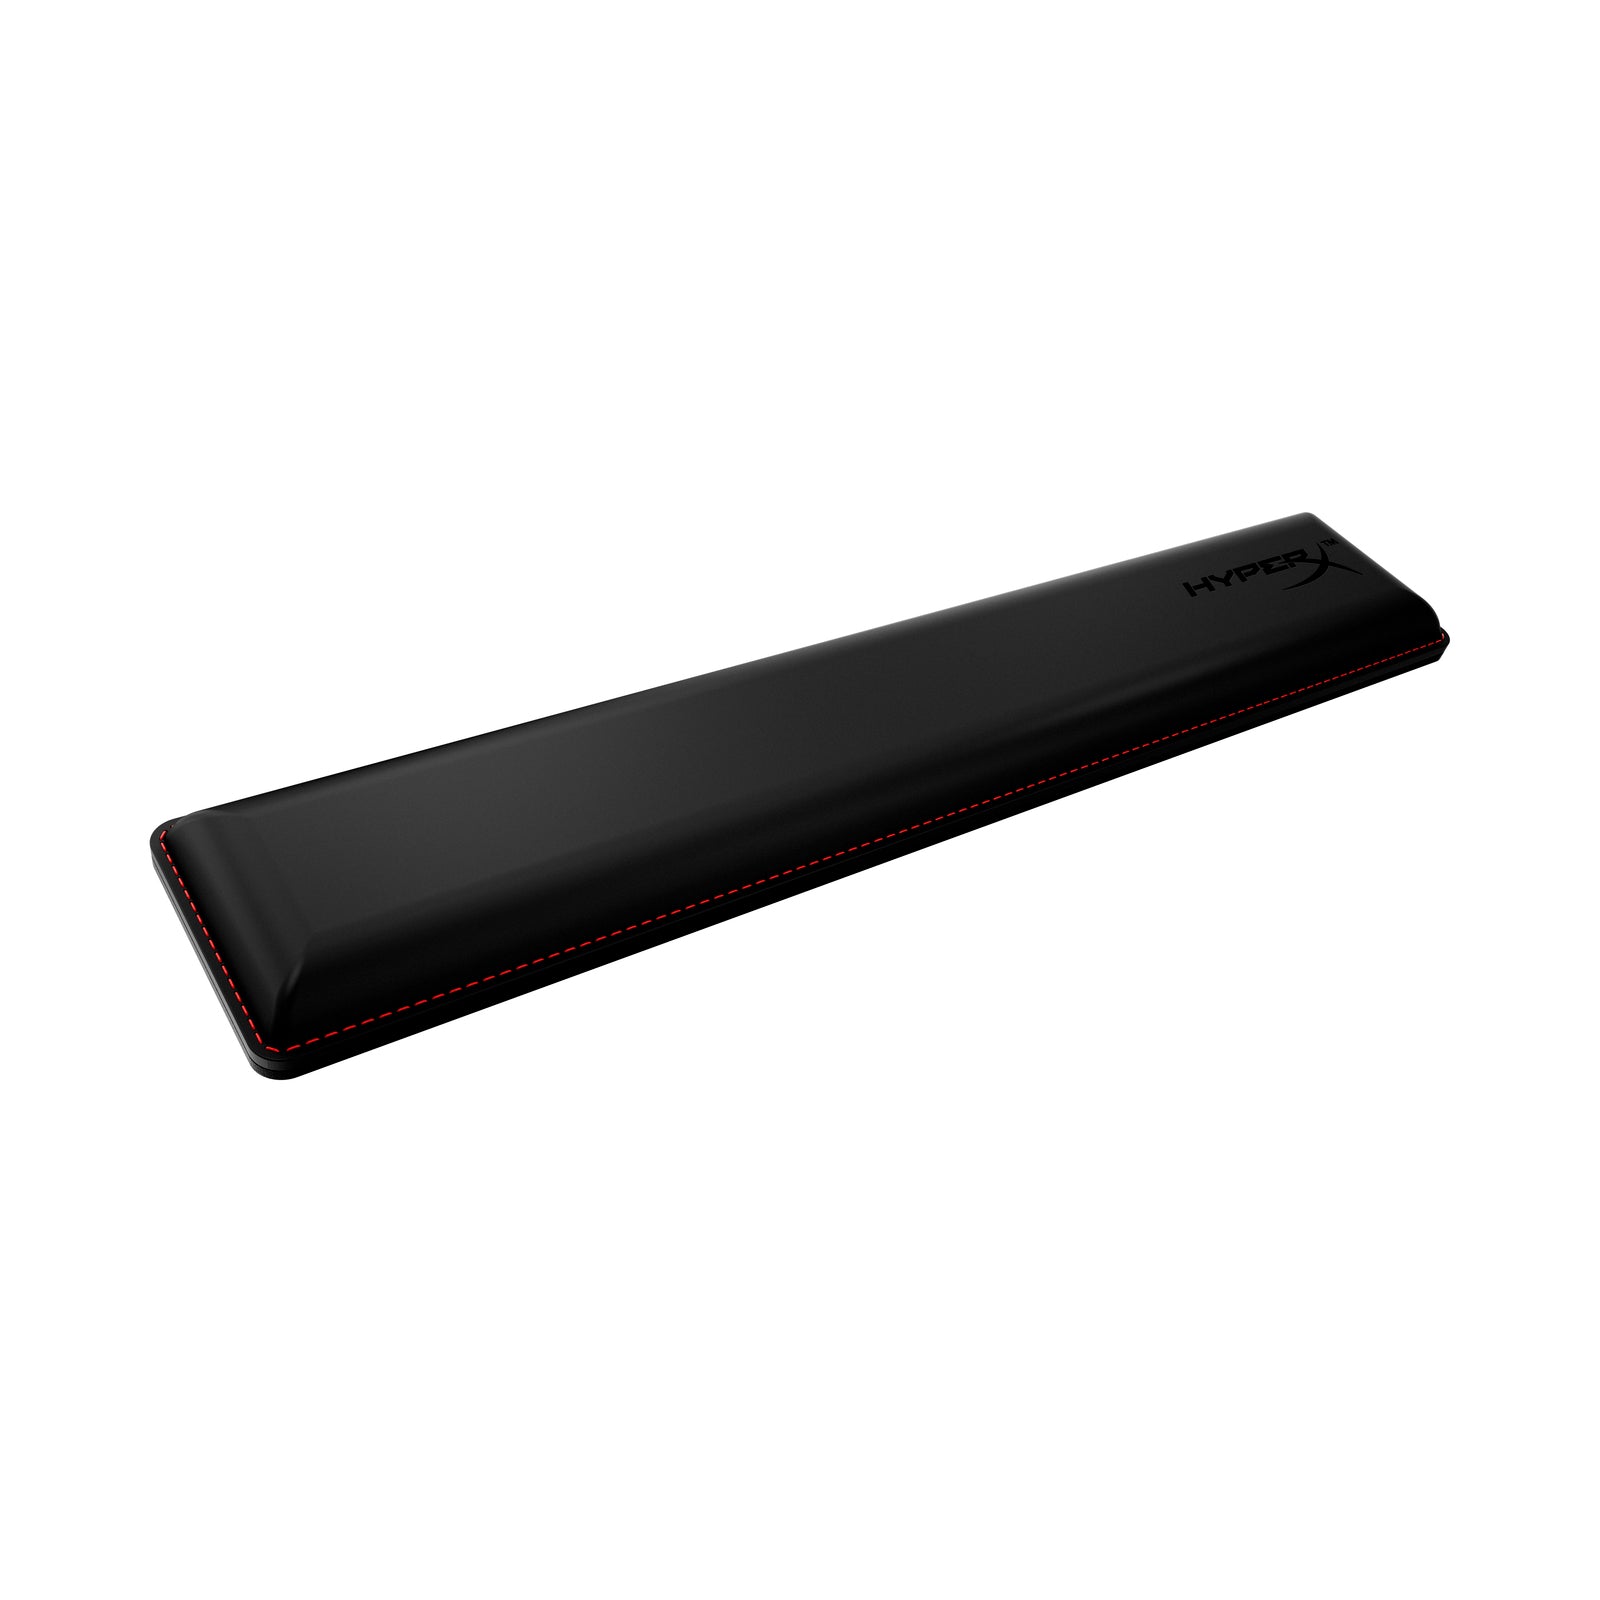 HyperX Wrist Rest - Keyboard - Full Size - Black